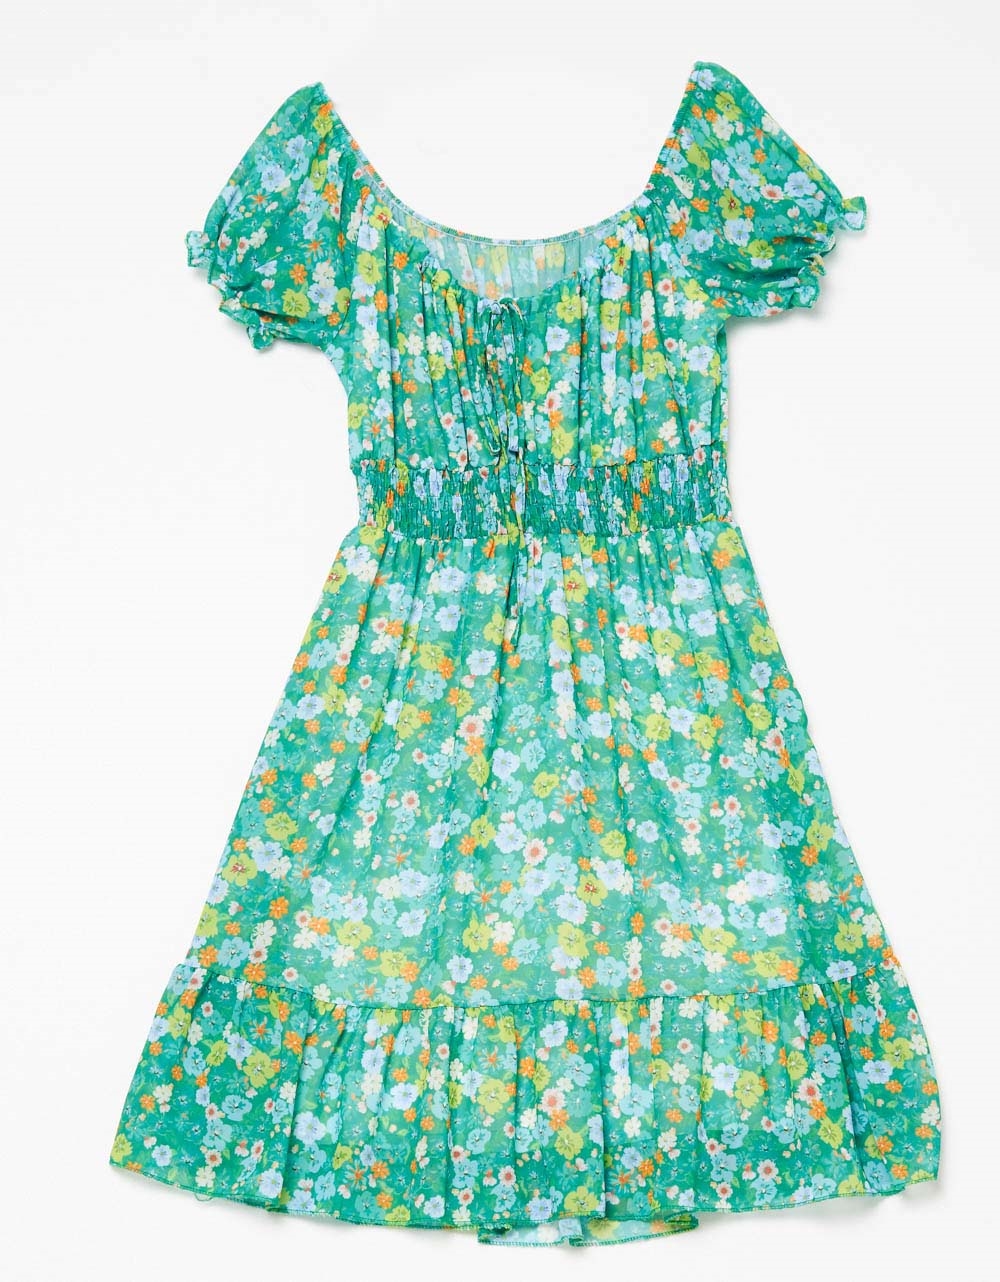 Εικόνα από Μίνι floral φόρεμα με βολάν Πράσινο